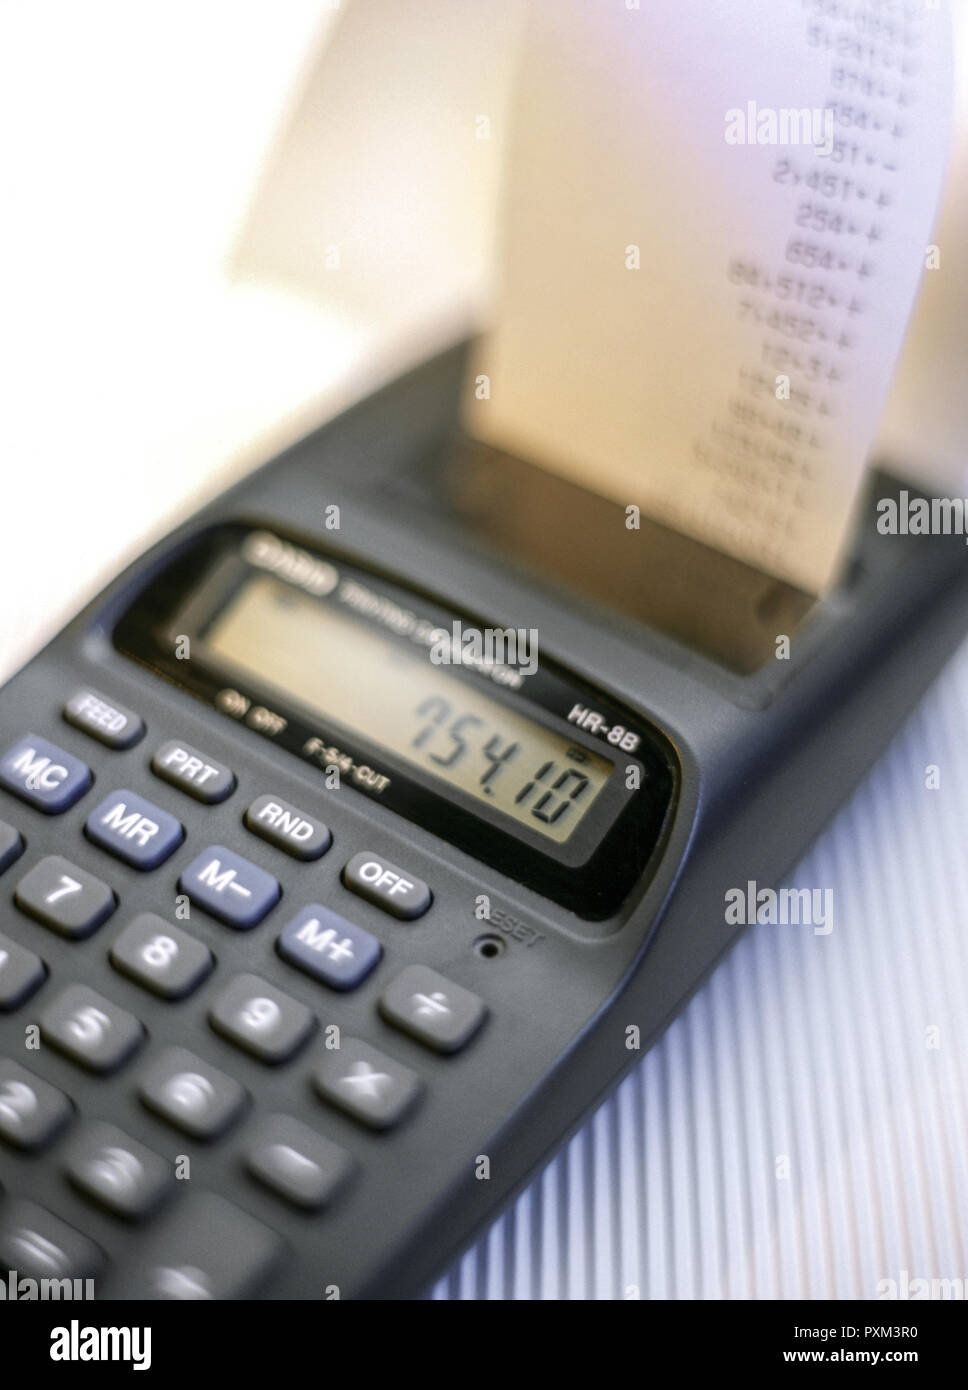 Tischrechner mit Kontrol Streifen. Symbol für Kosten, Ausgaben, Einnahmen und Gewinne Stock Photo